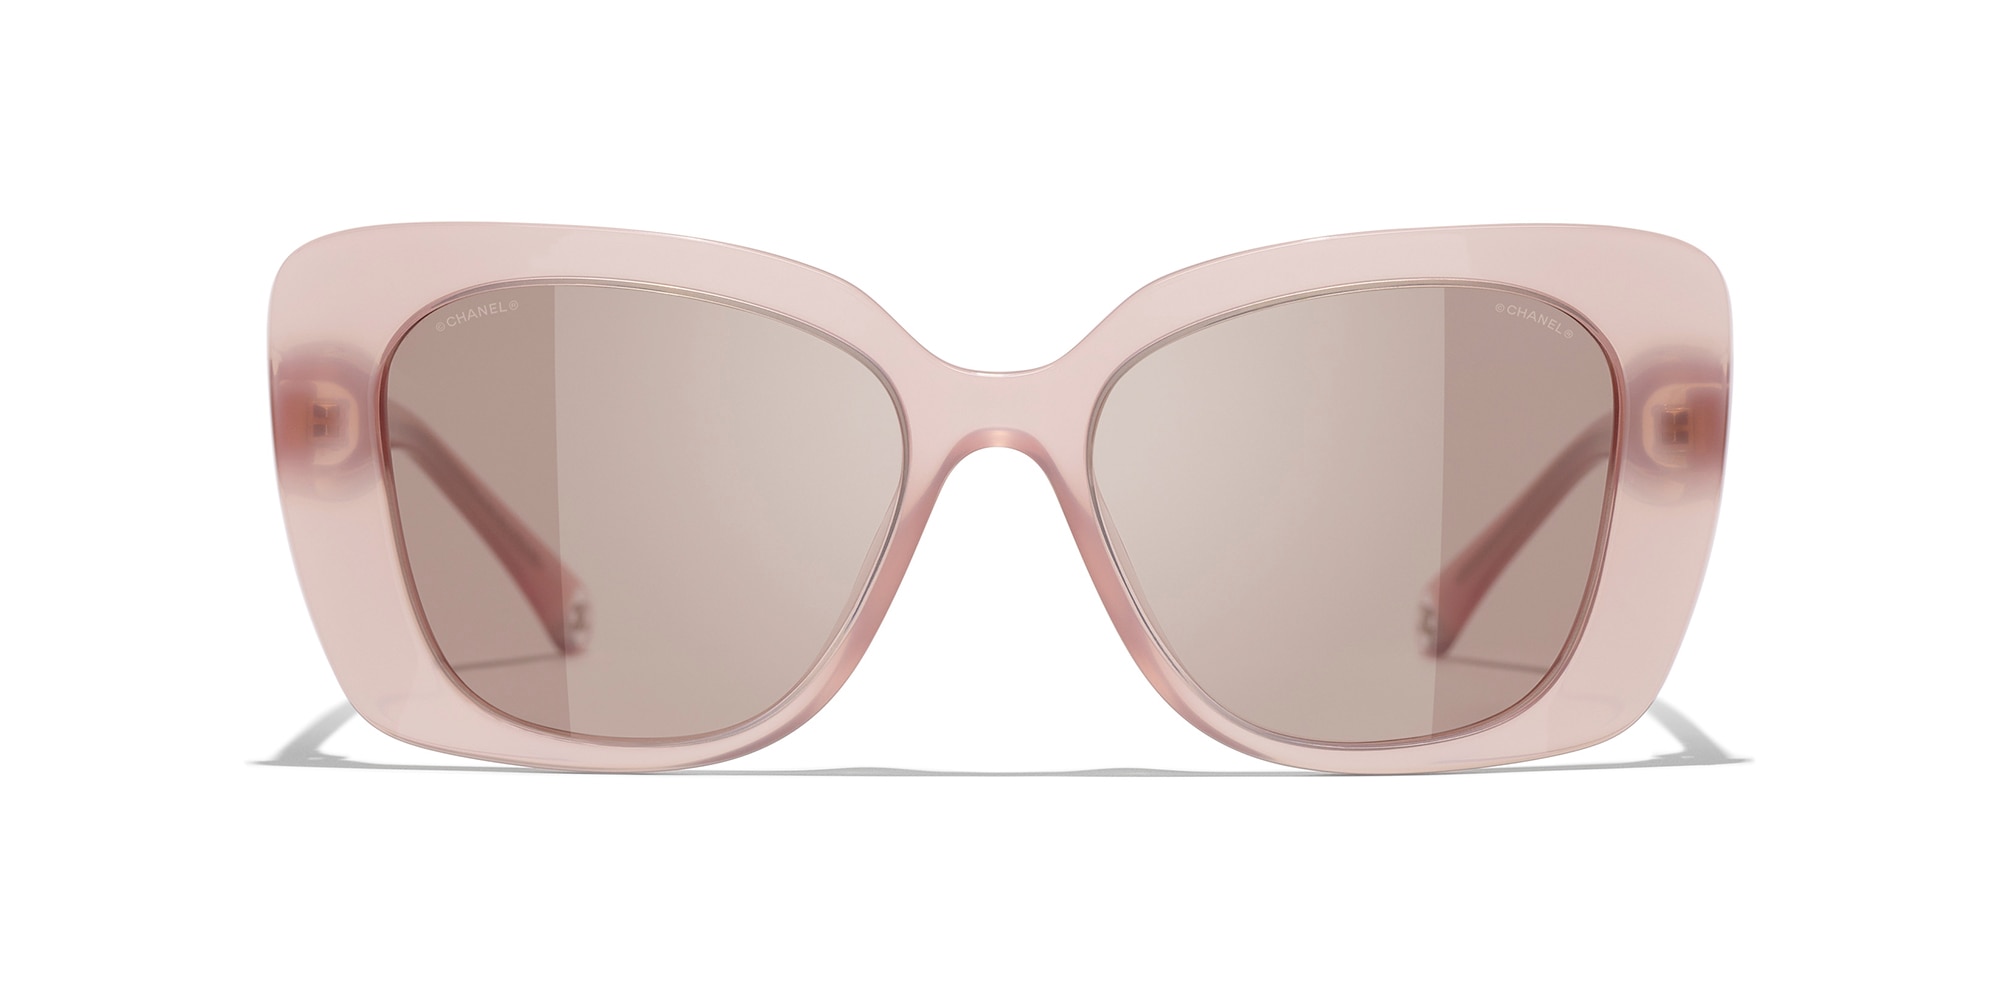 CHANEL CC Logos Sunglasses Eye Wear Plastic 5278A Black Italy Accessory  07YA367  eBay